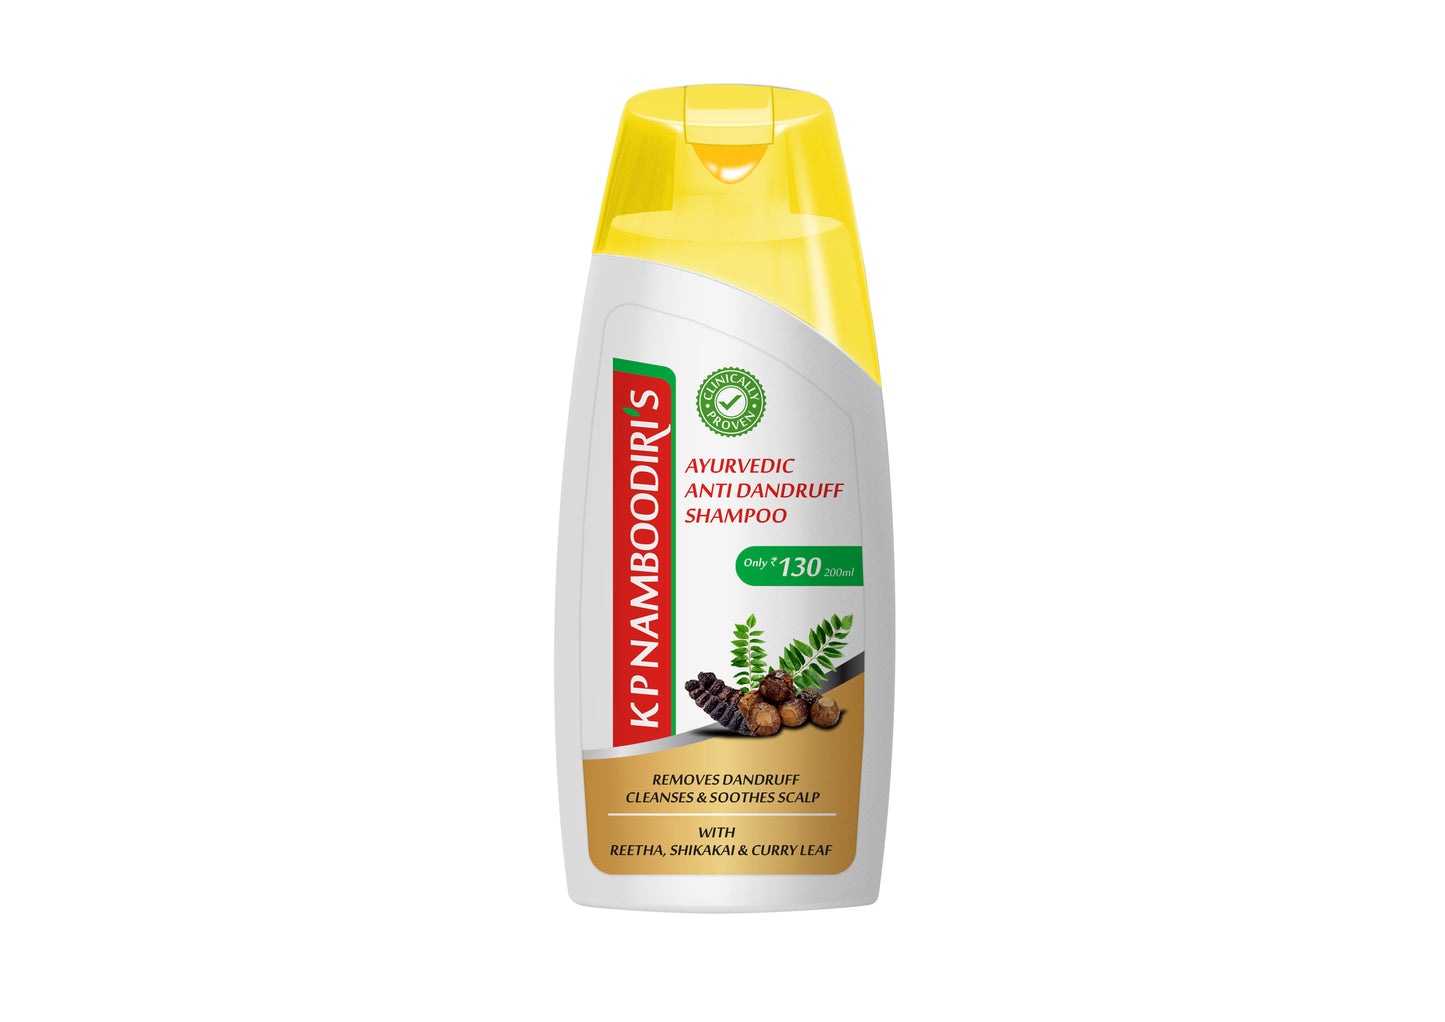 K P Namboodiri’s Ayurvedic Anti Dandruff Shampoo